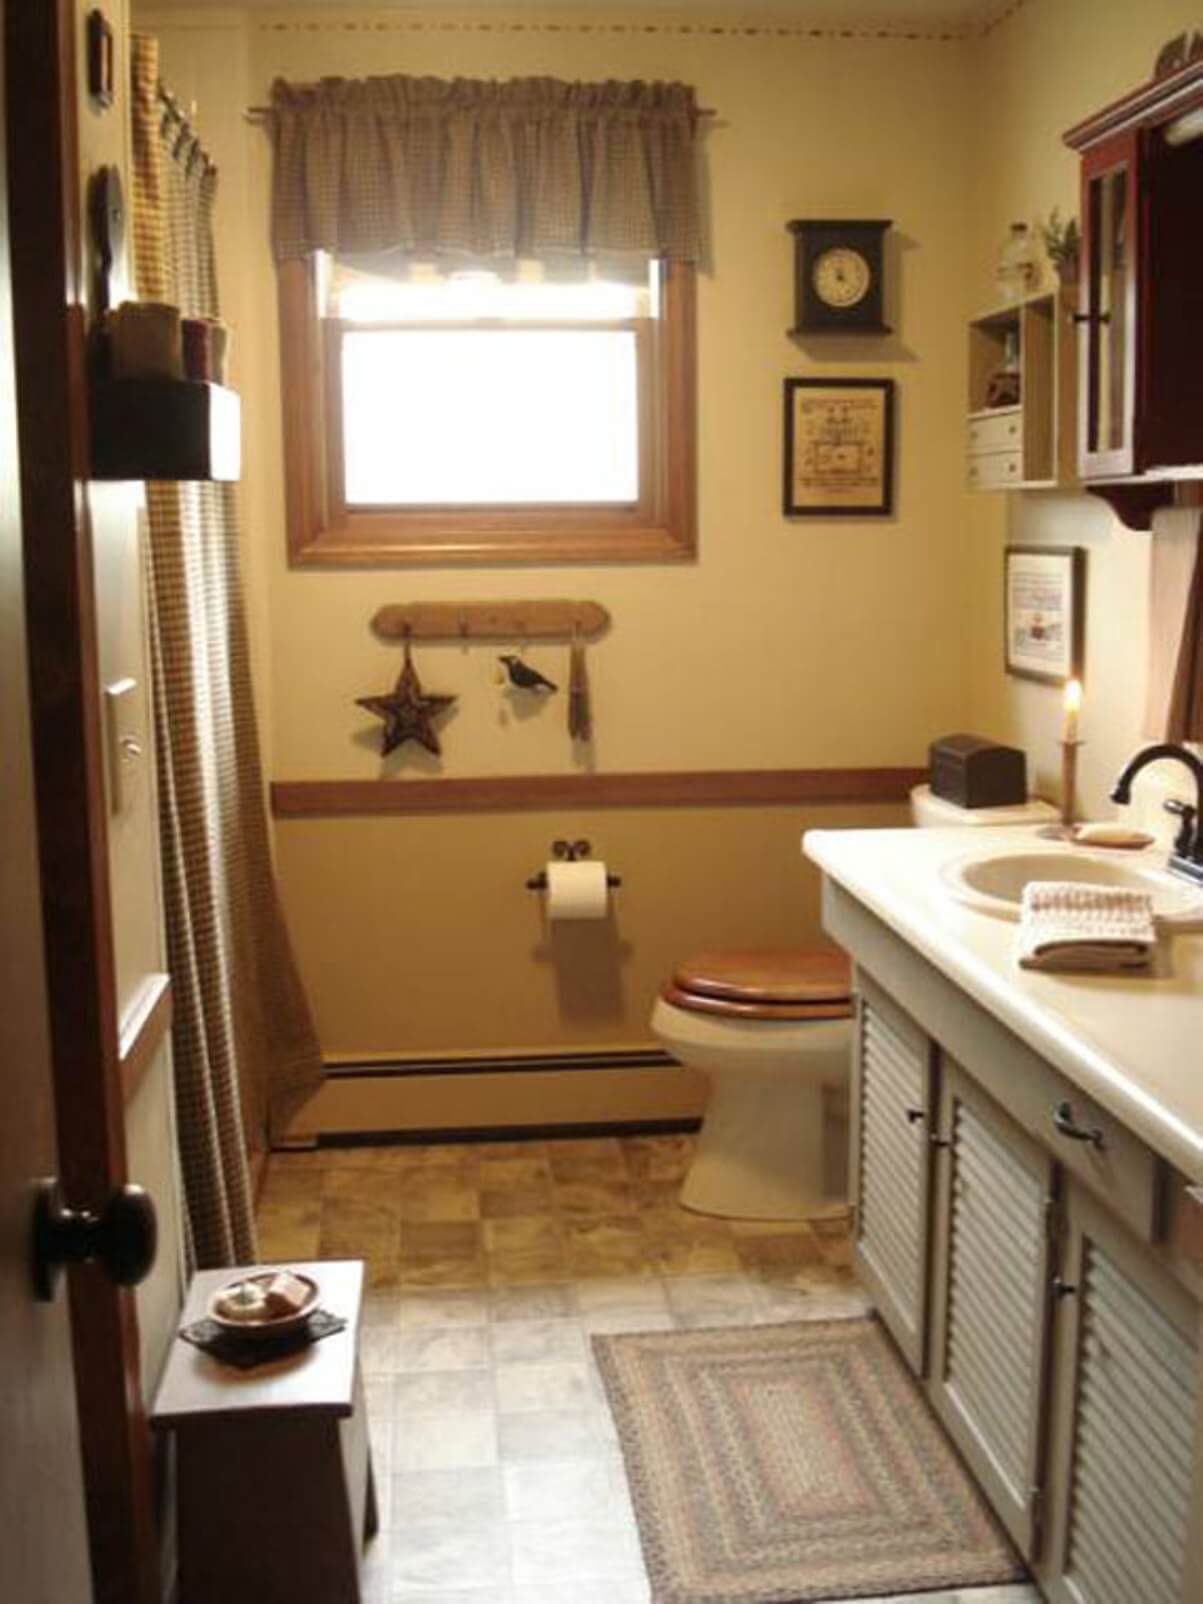 Vintage brown bathroom